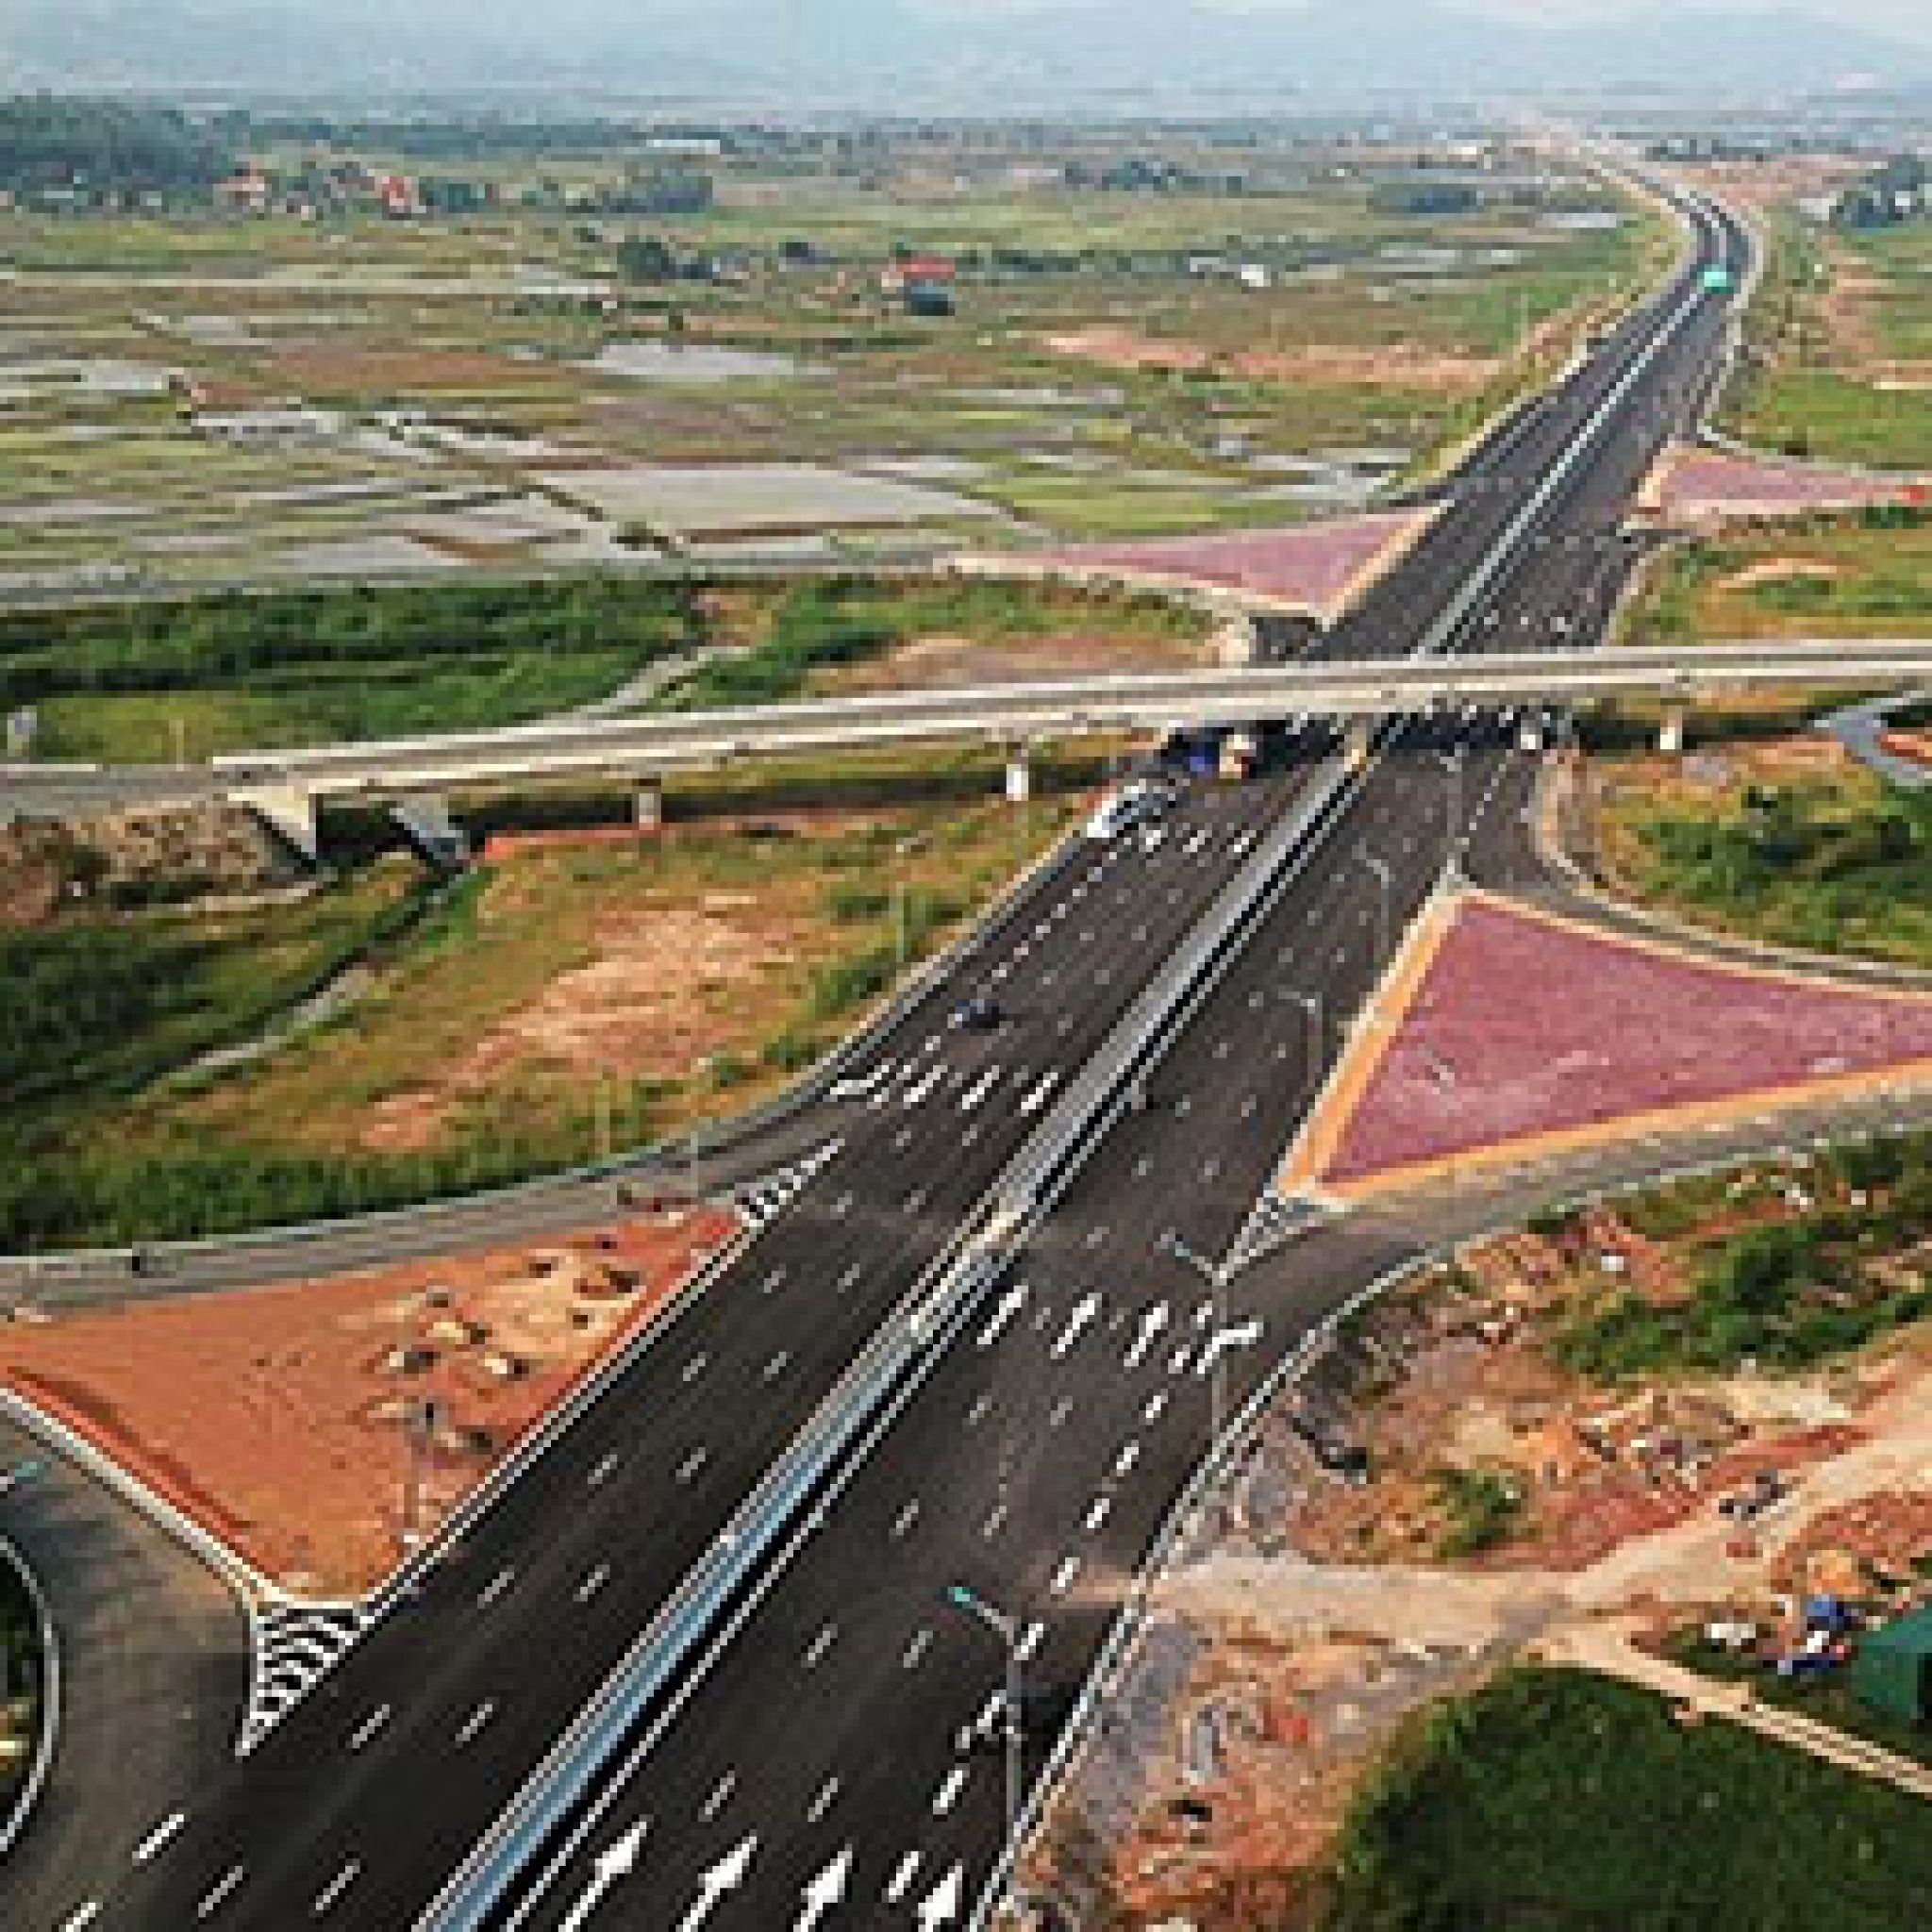 Đầu tư cơ sở hạ tầng góp phần thúc đẩy phát triển kinh tế - xã hội Quảng Ninh